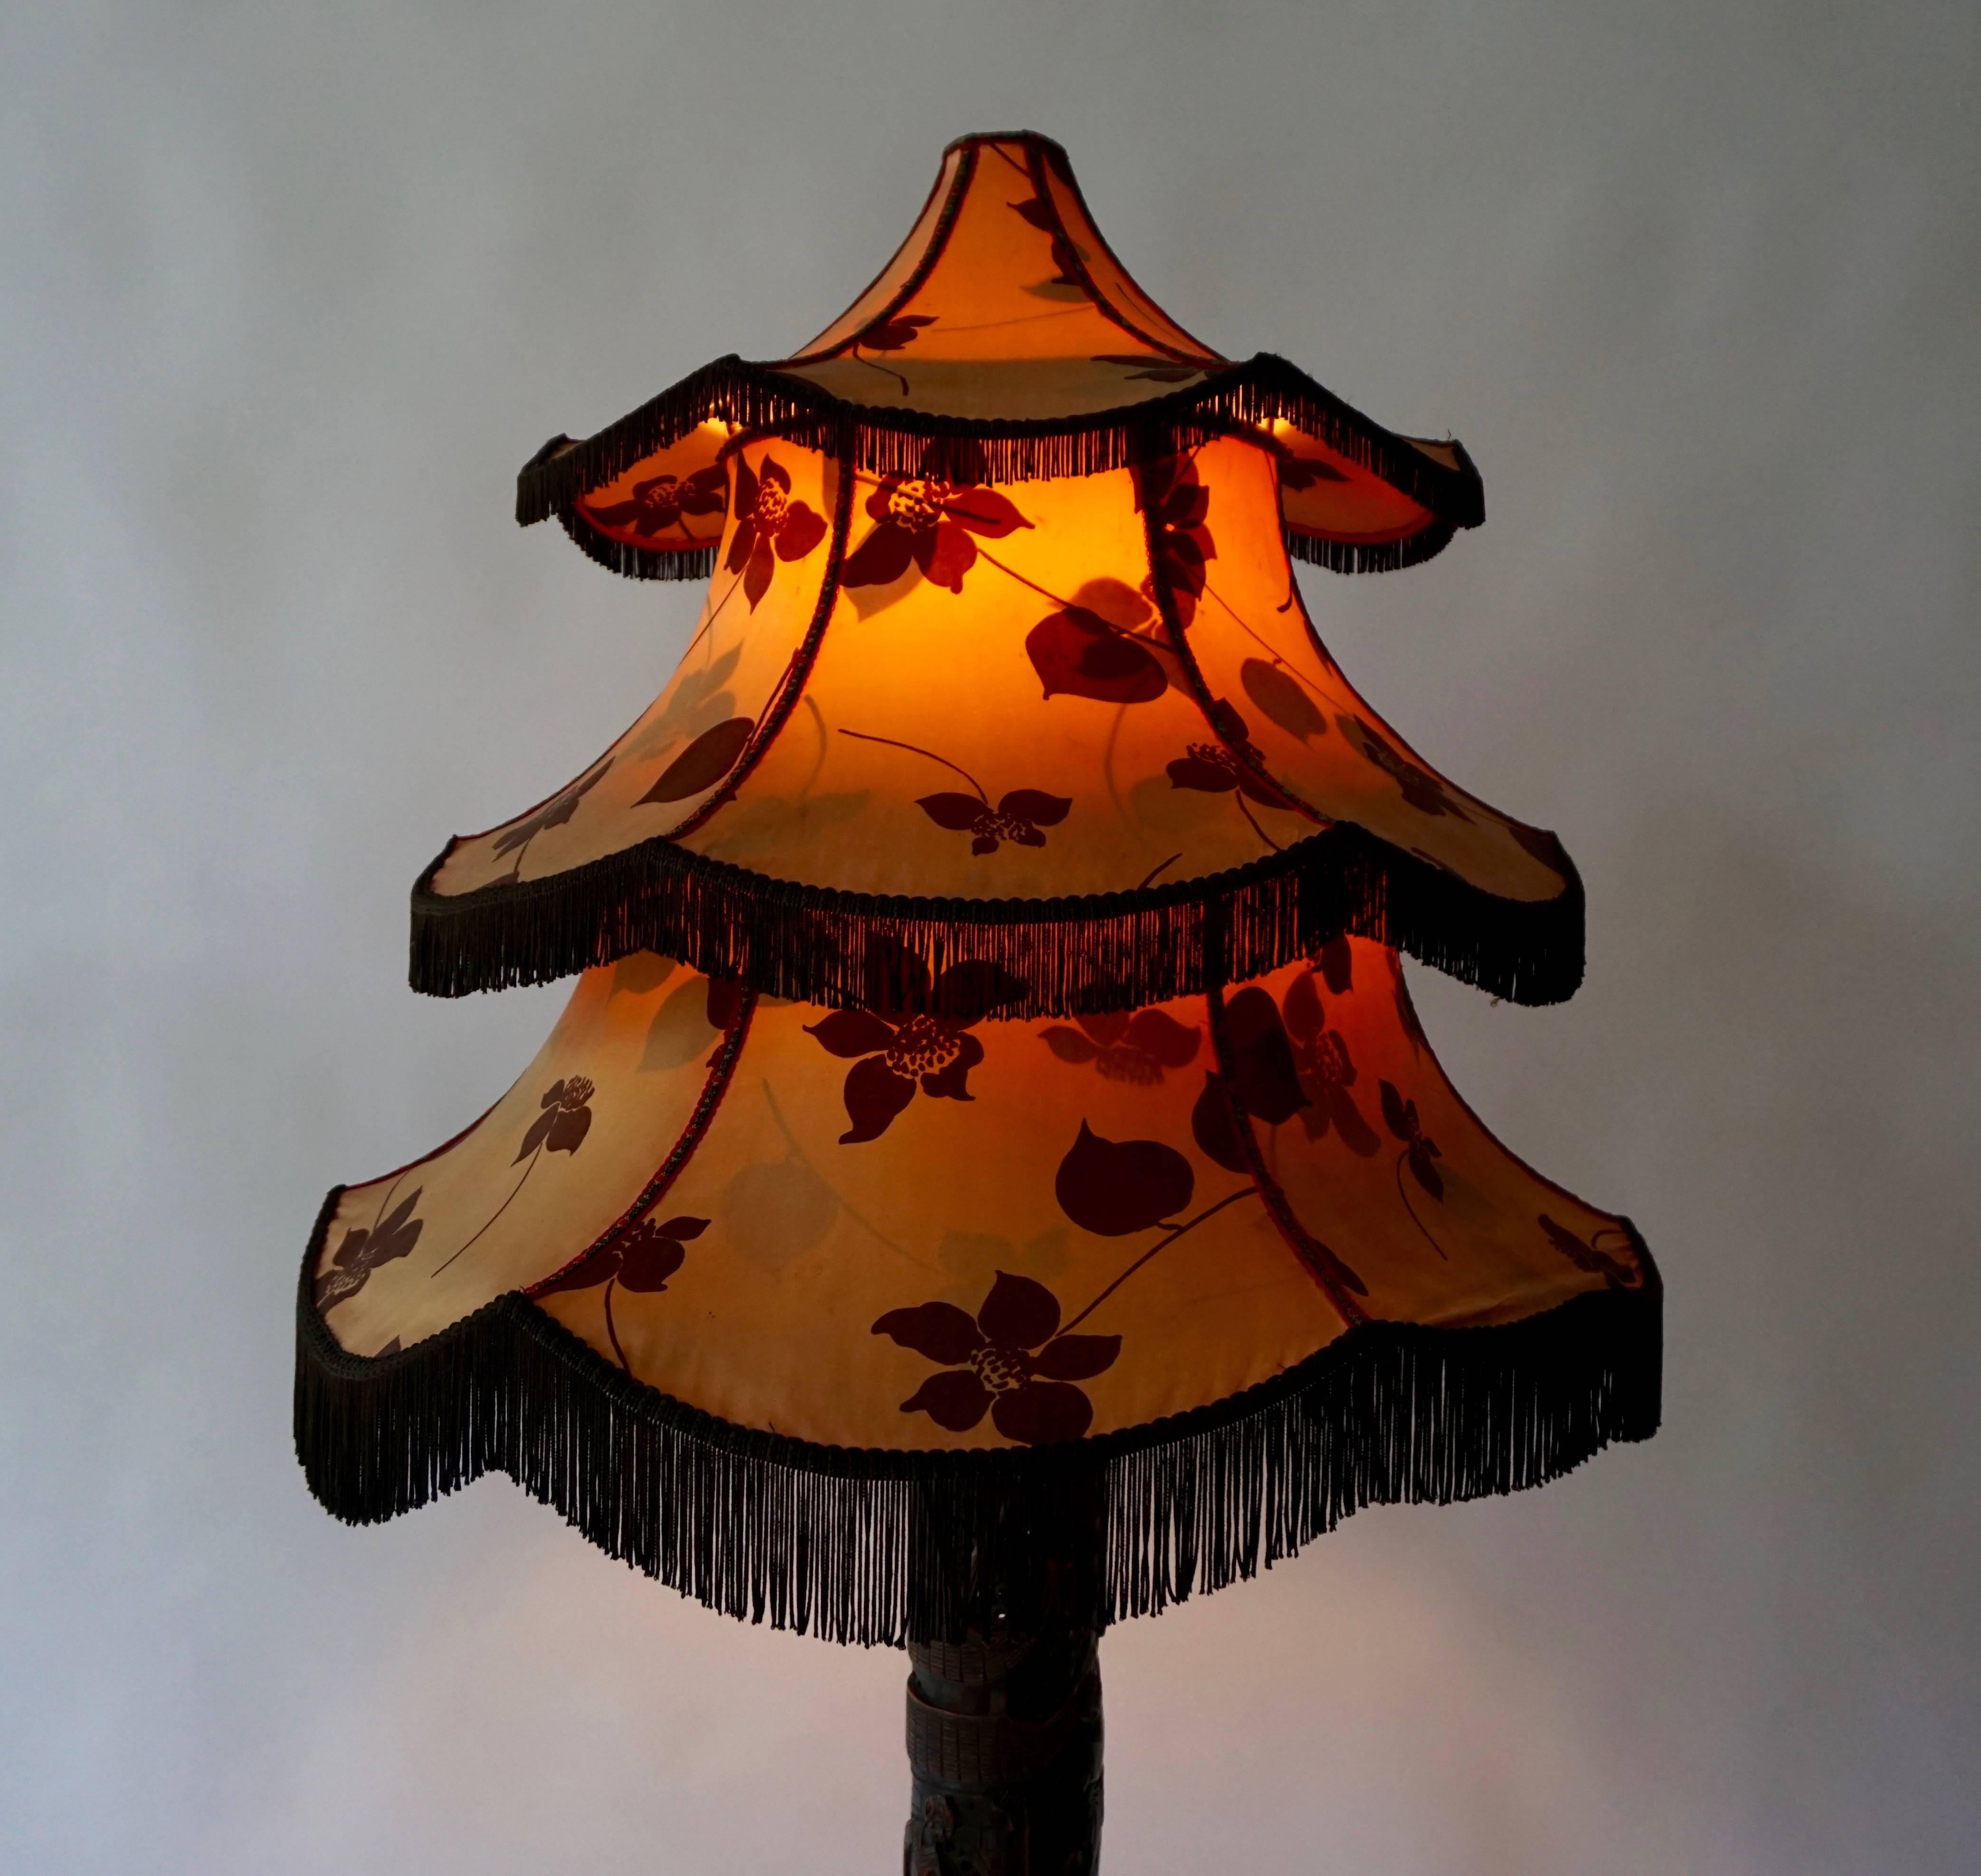 Chinesische Stehlampe.
Für Ihre Betrachtung eine antike Stehlampe. Handgeschnitzter Skulpturensockel aus Massivholz mit wunderschönem, mit Blumen verziertem Pagodenschirm. China in den 1920er Jahren. Holz in gutem Zustand. Schöne Details an den